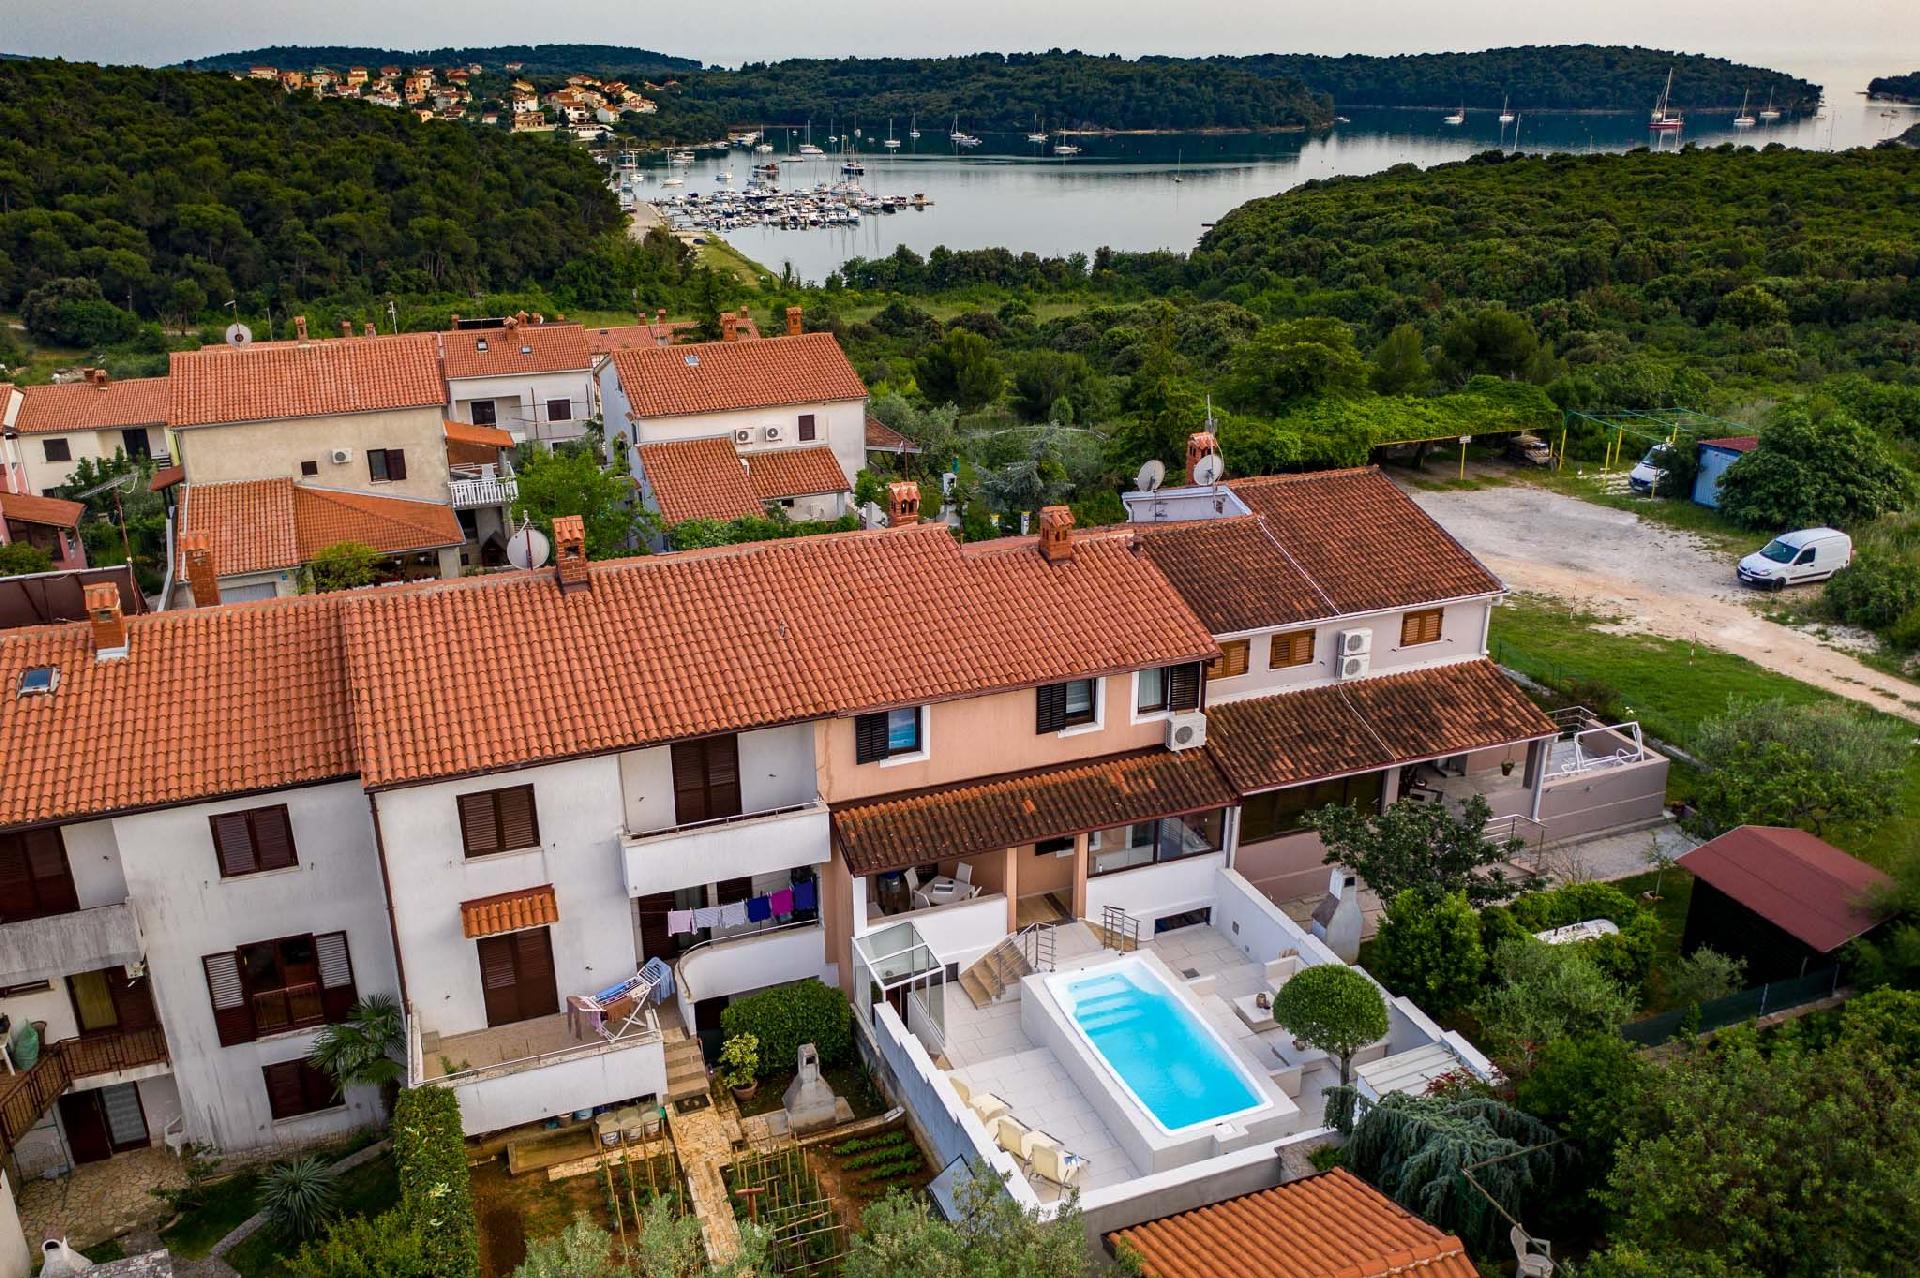 Ferienwohnung für 6 Personen ca. 140 m²  Ferienwohnung in Kroatien